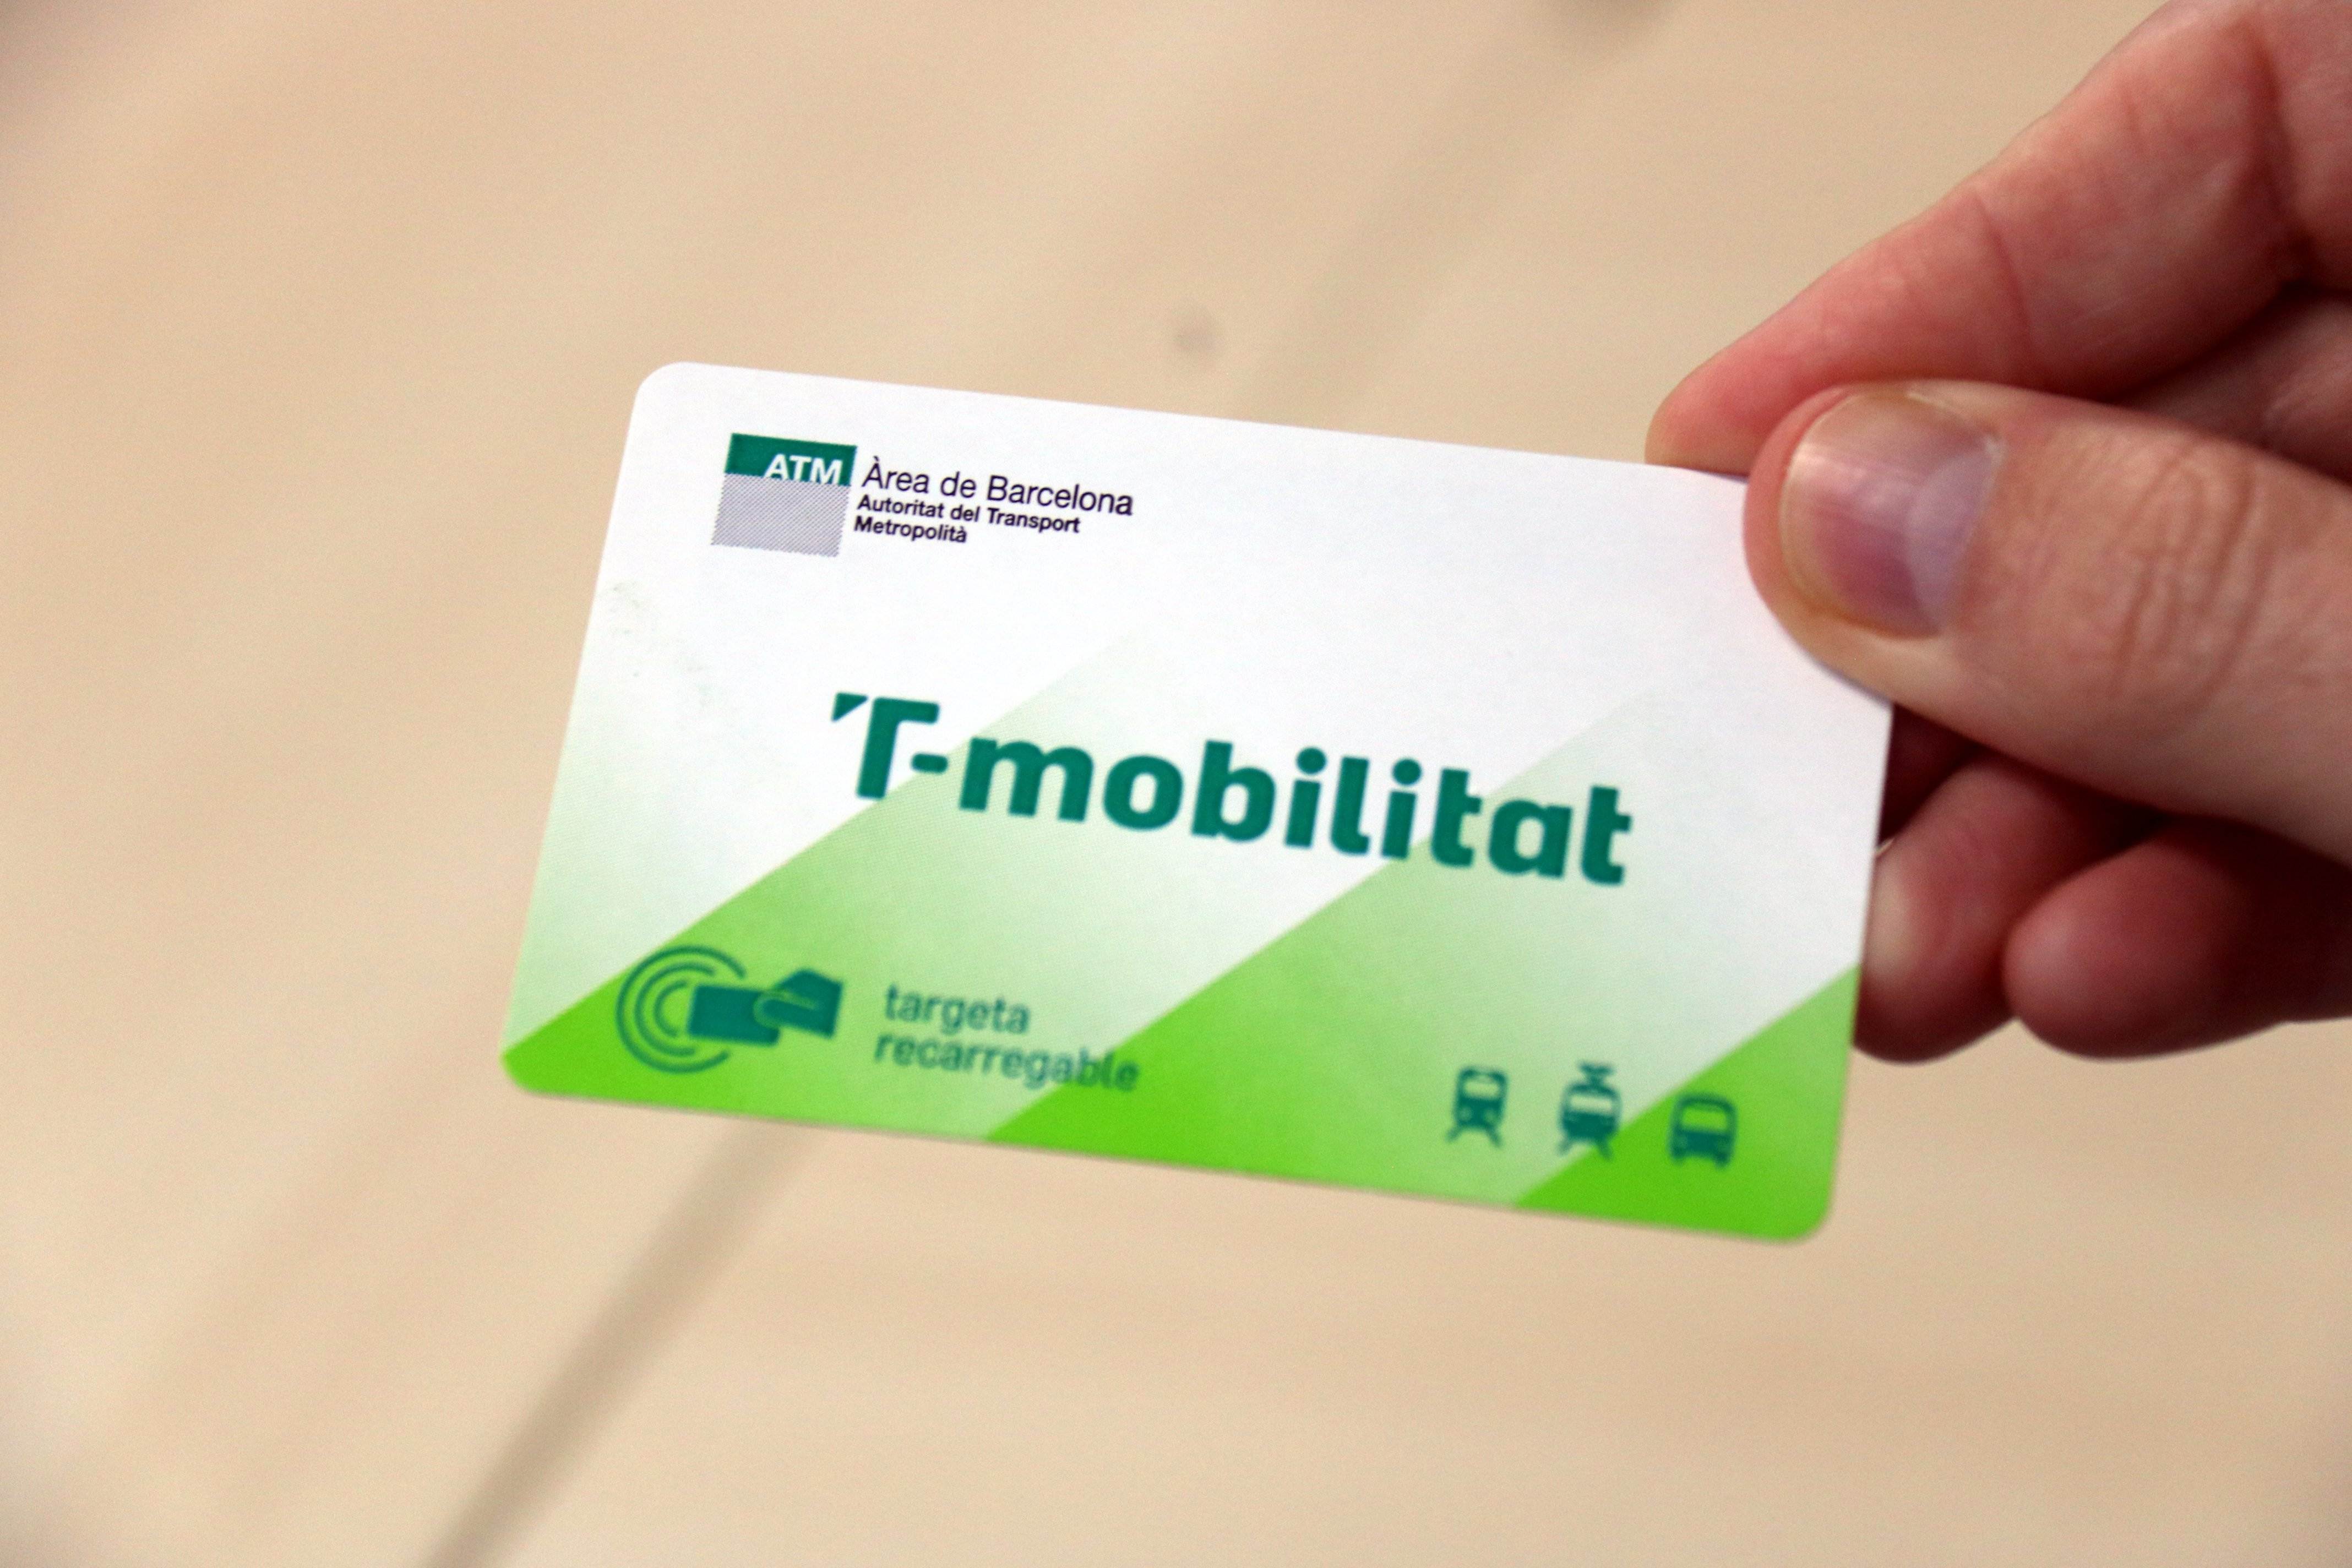 Este otoño ya estará disponible la T-mobilitat en formato cartón, adiós a las tarjetas actuales